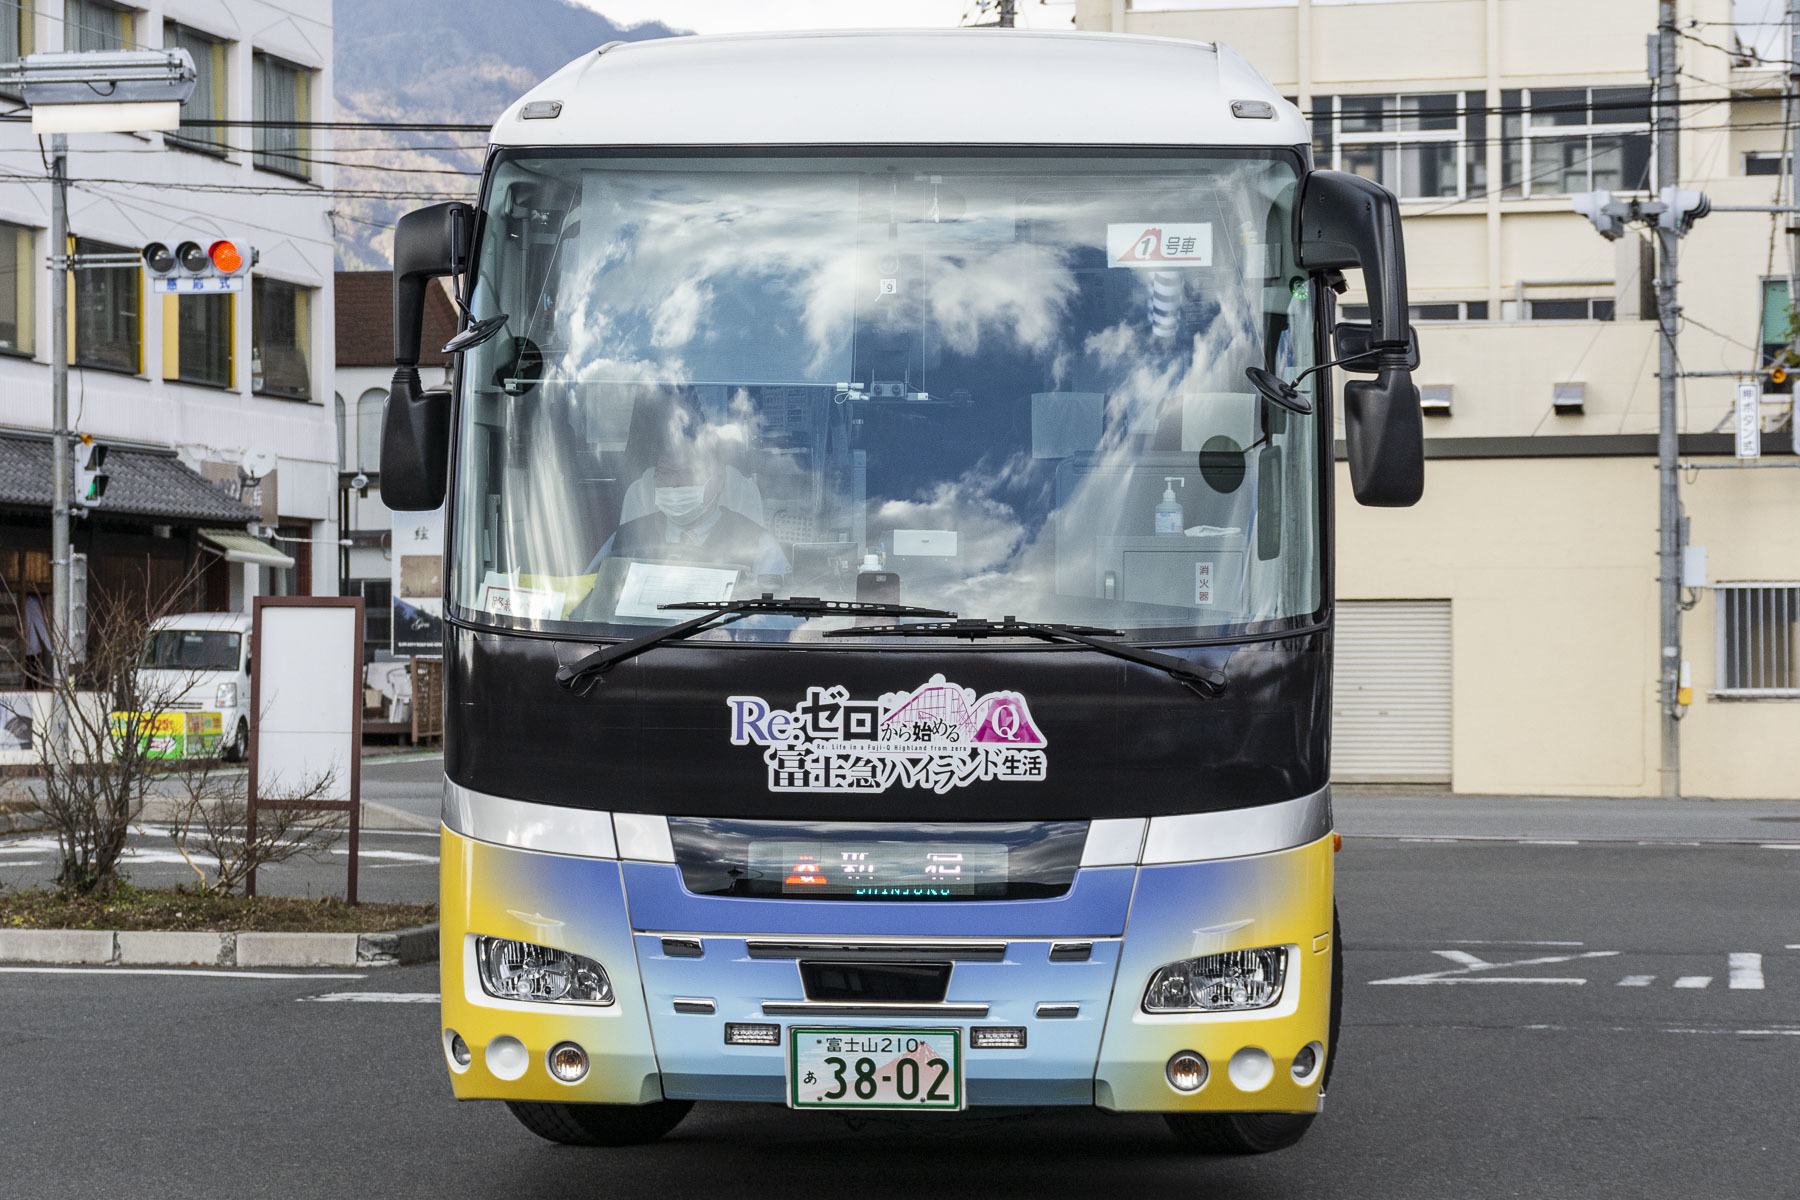 富士急バス / Re:ゼロから始める富士急ハイランド生活ラッピングバス_d0226909_12535076.jpg